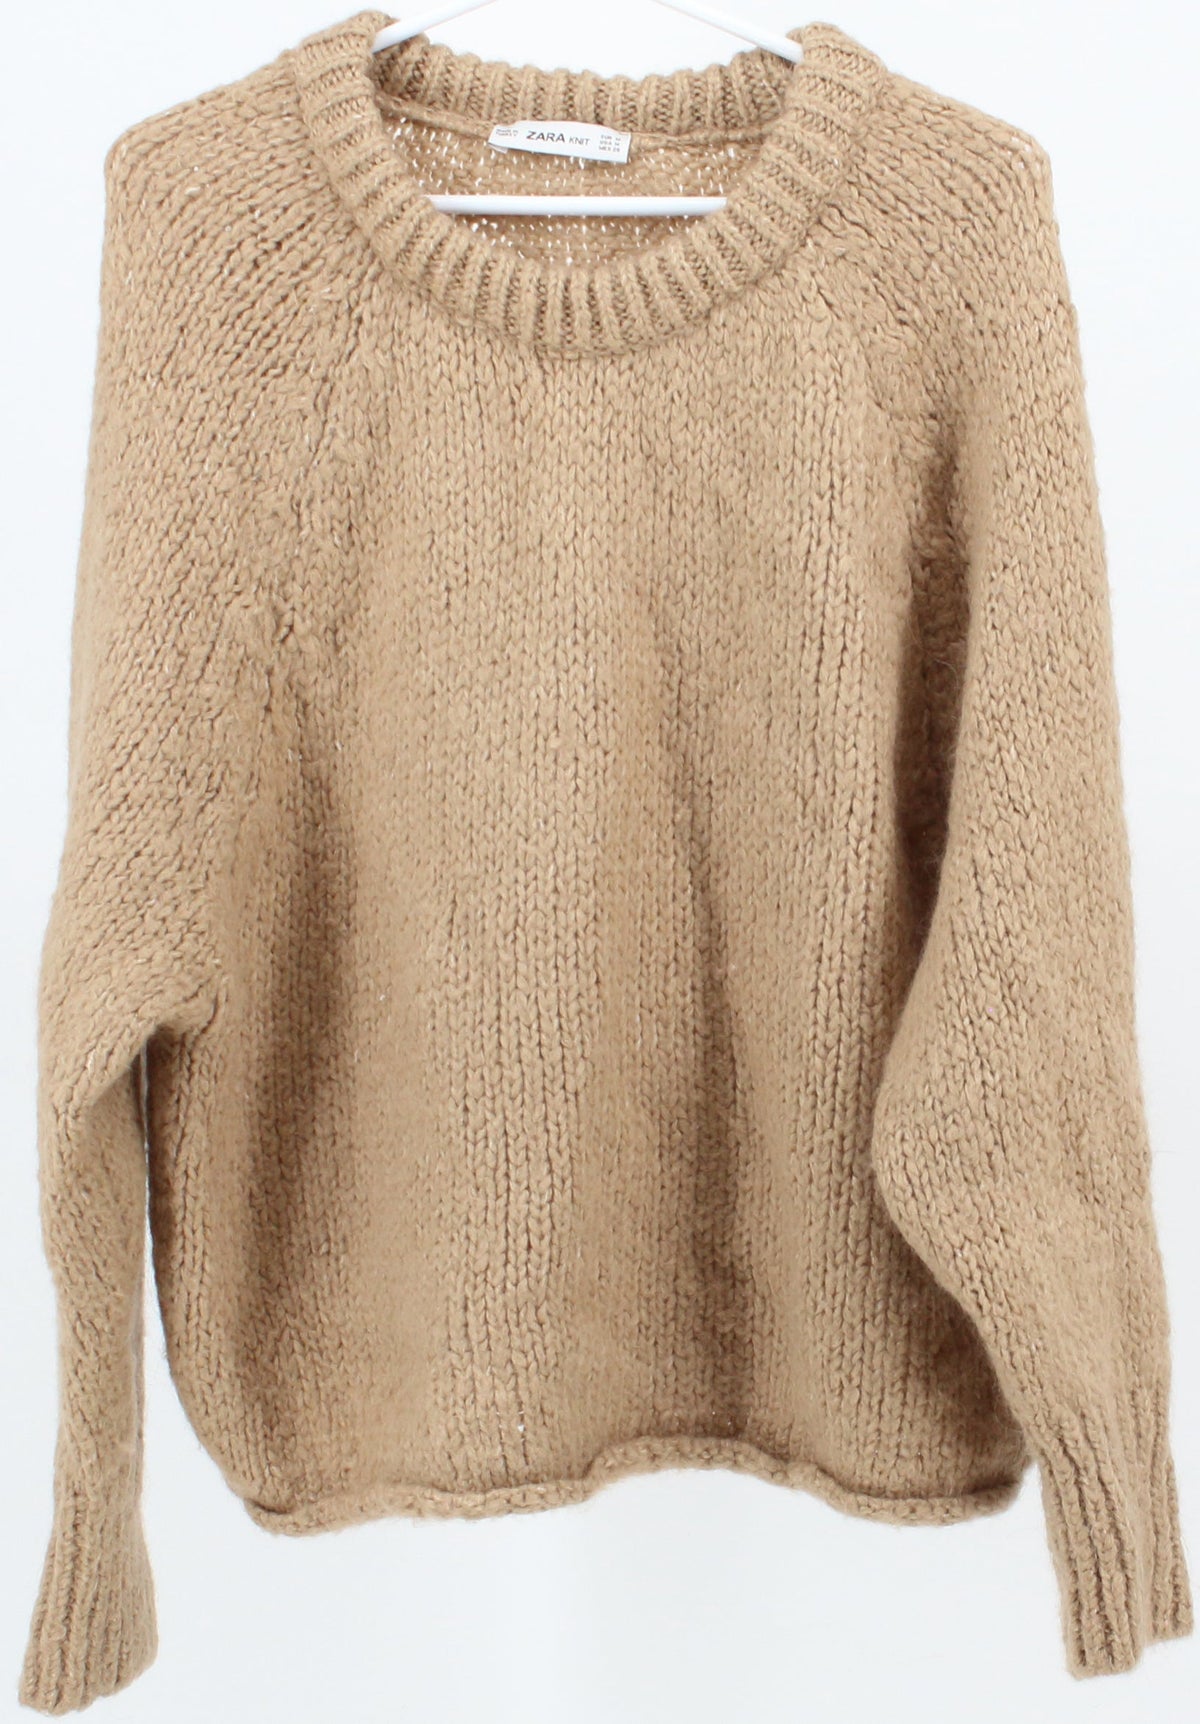 Zara Knit Beige Sweater